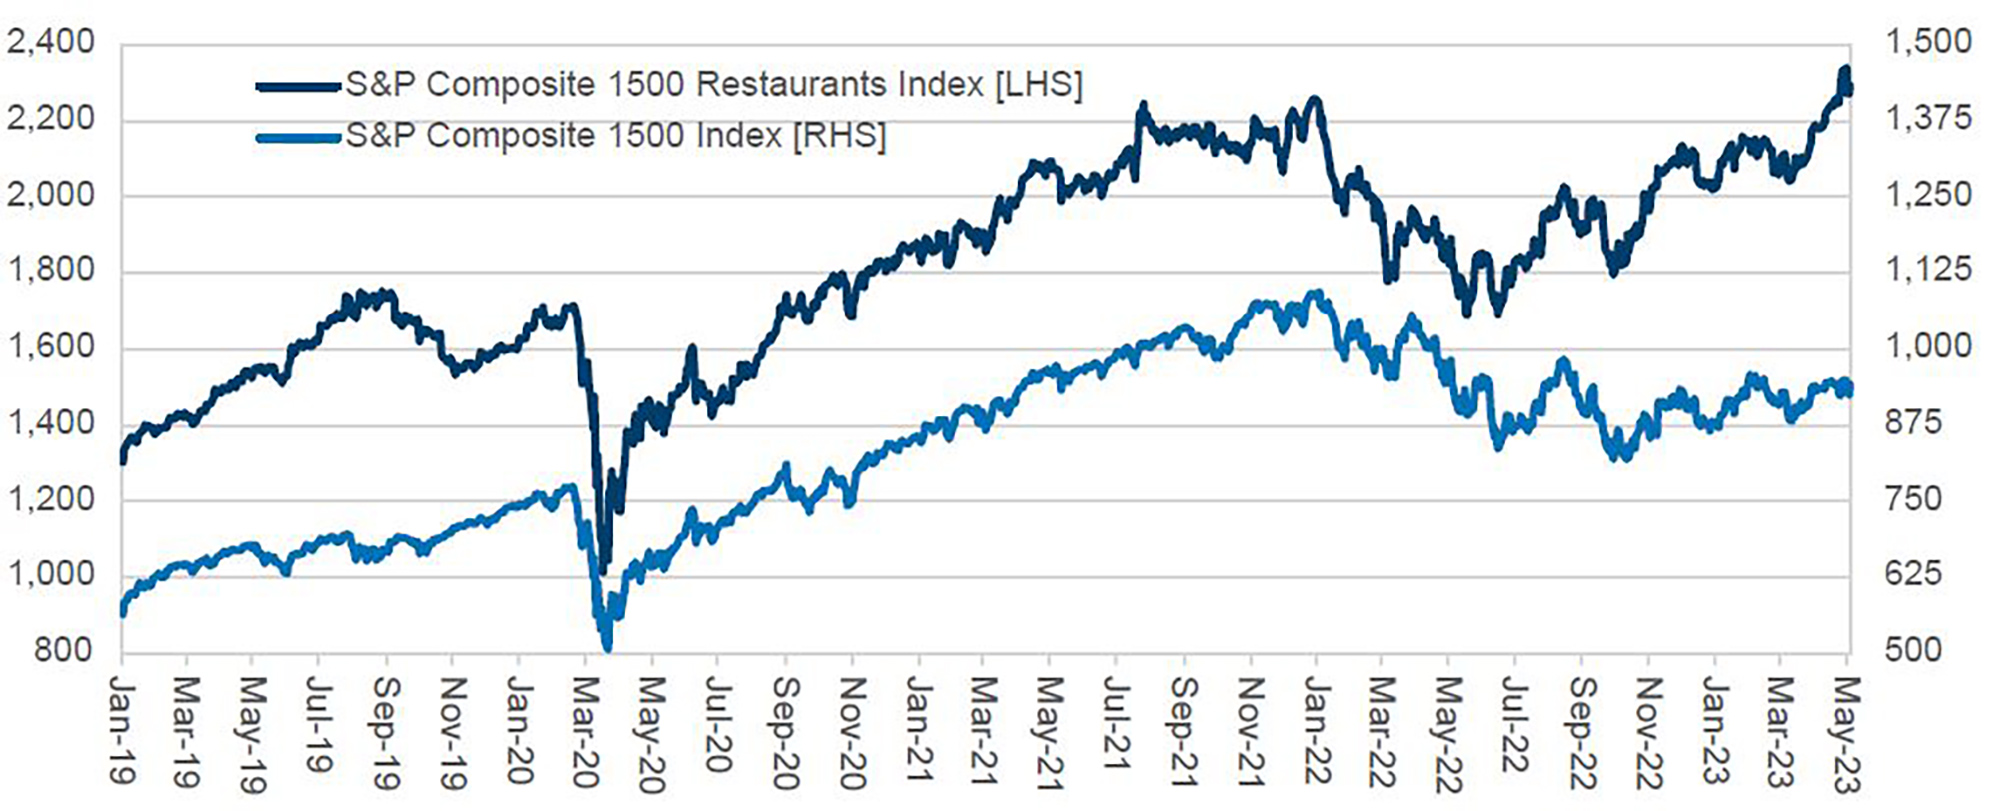 Figure 3: S&P 1500 Restaurant Index vs. S&P 1500 Composite Index